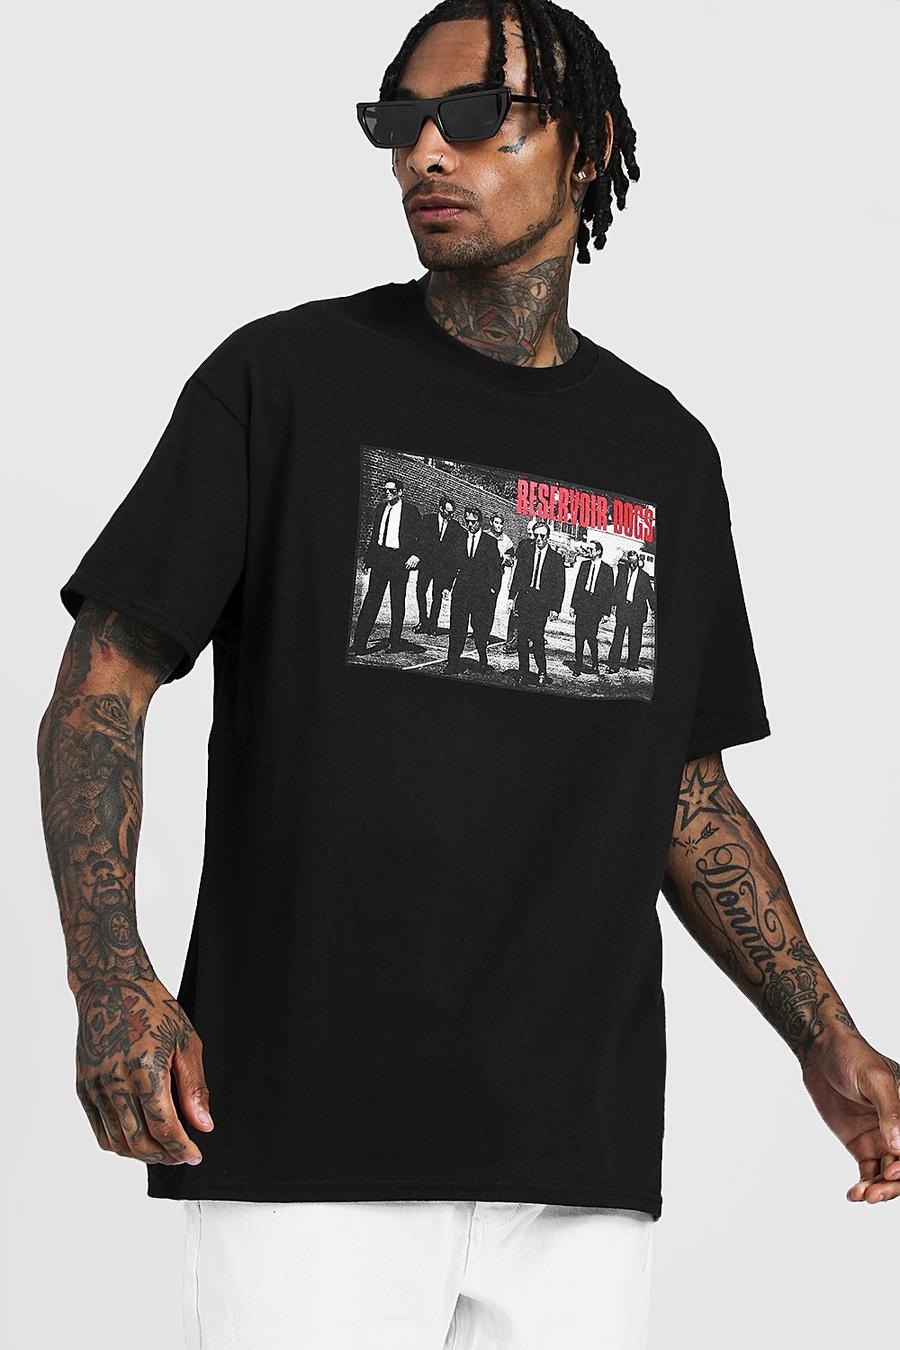 Black Reservoir Dogs License T-Shirt image number 1